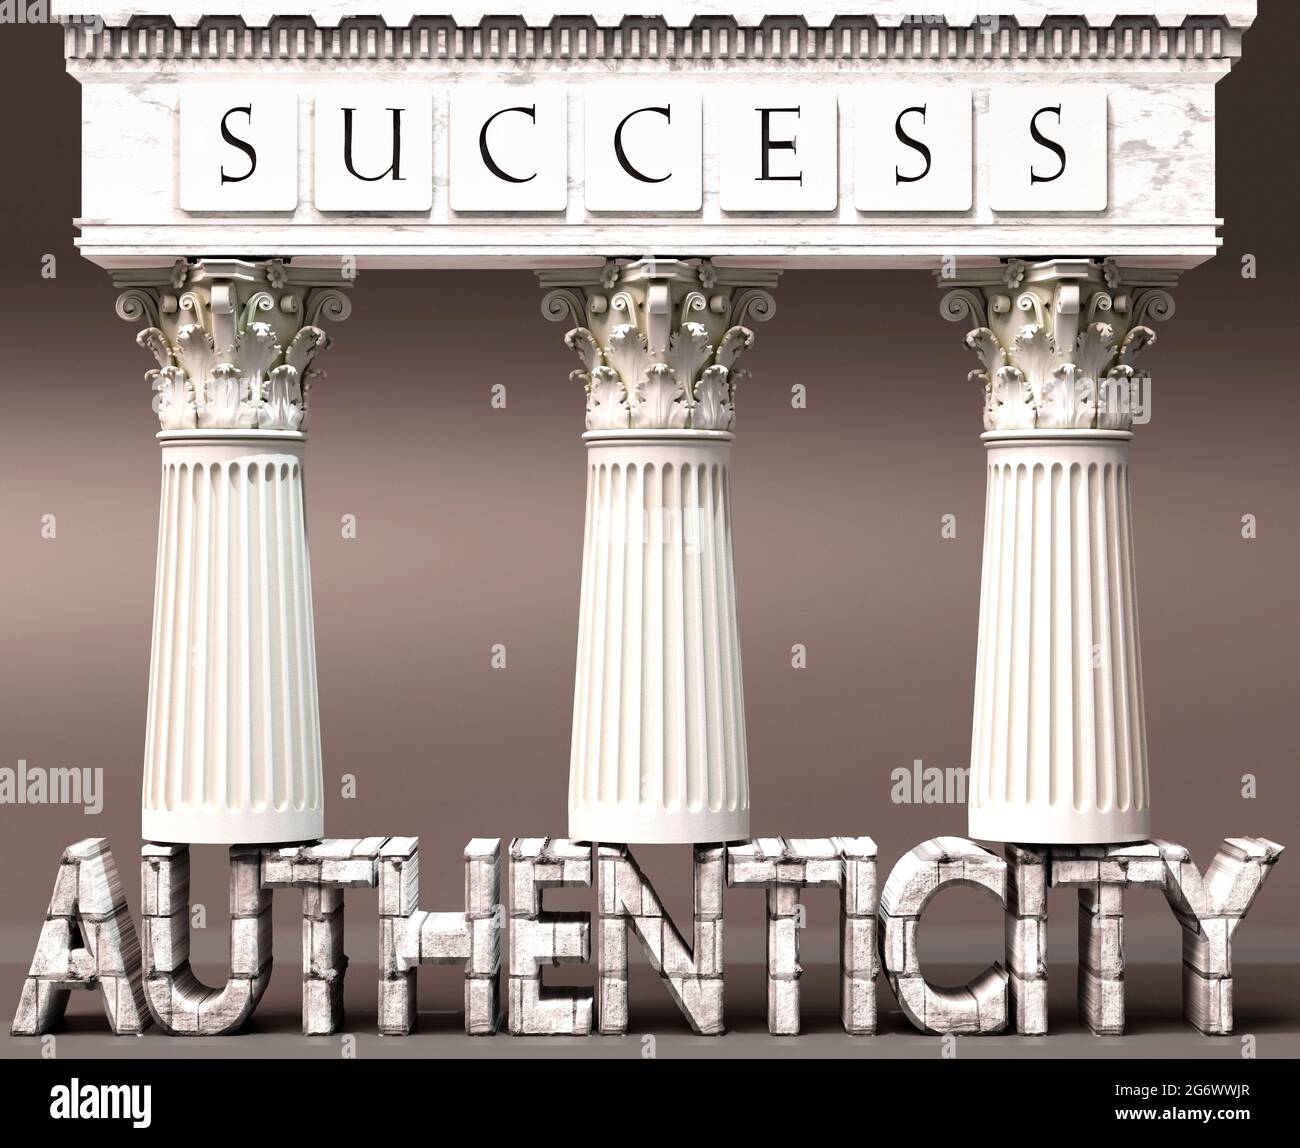 Authentizität als Grundlage des Erfolgs – symbolisiert durch Säulen des Erfolgs, unterstützt durch Authentizität, um zu zeigen, dass sie für das Erreichen der Ziele von A unerlässlich ist Stockfoto